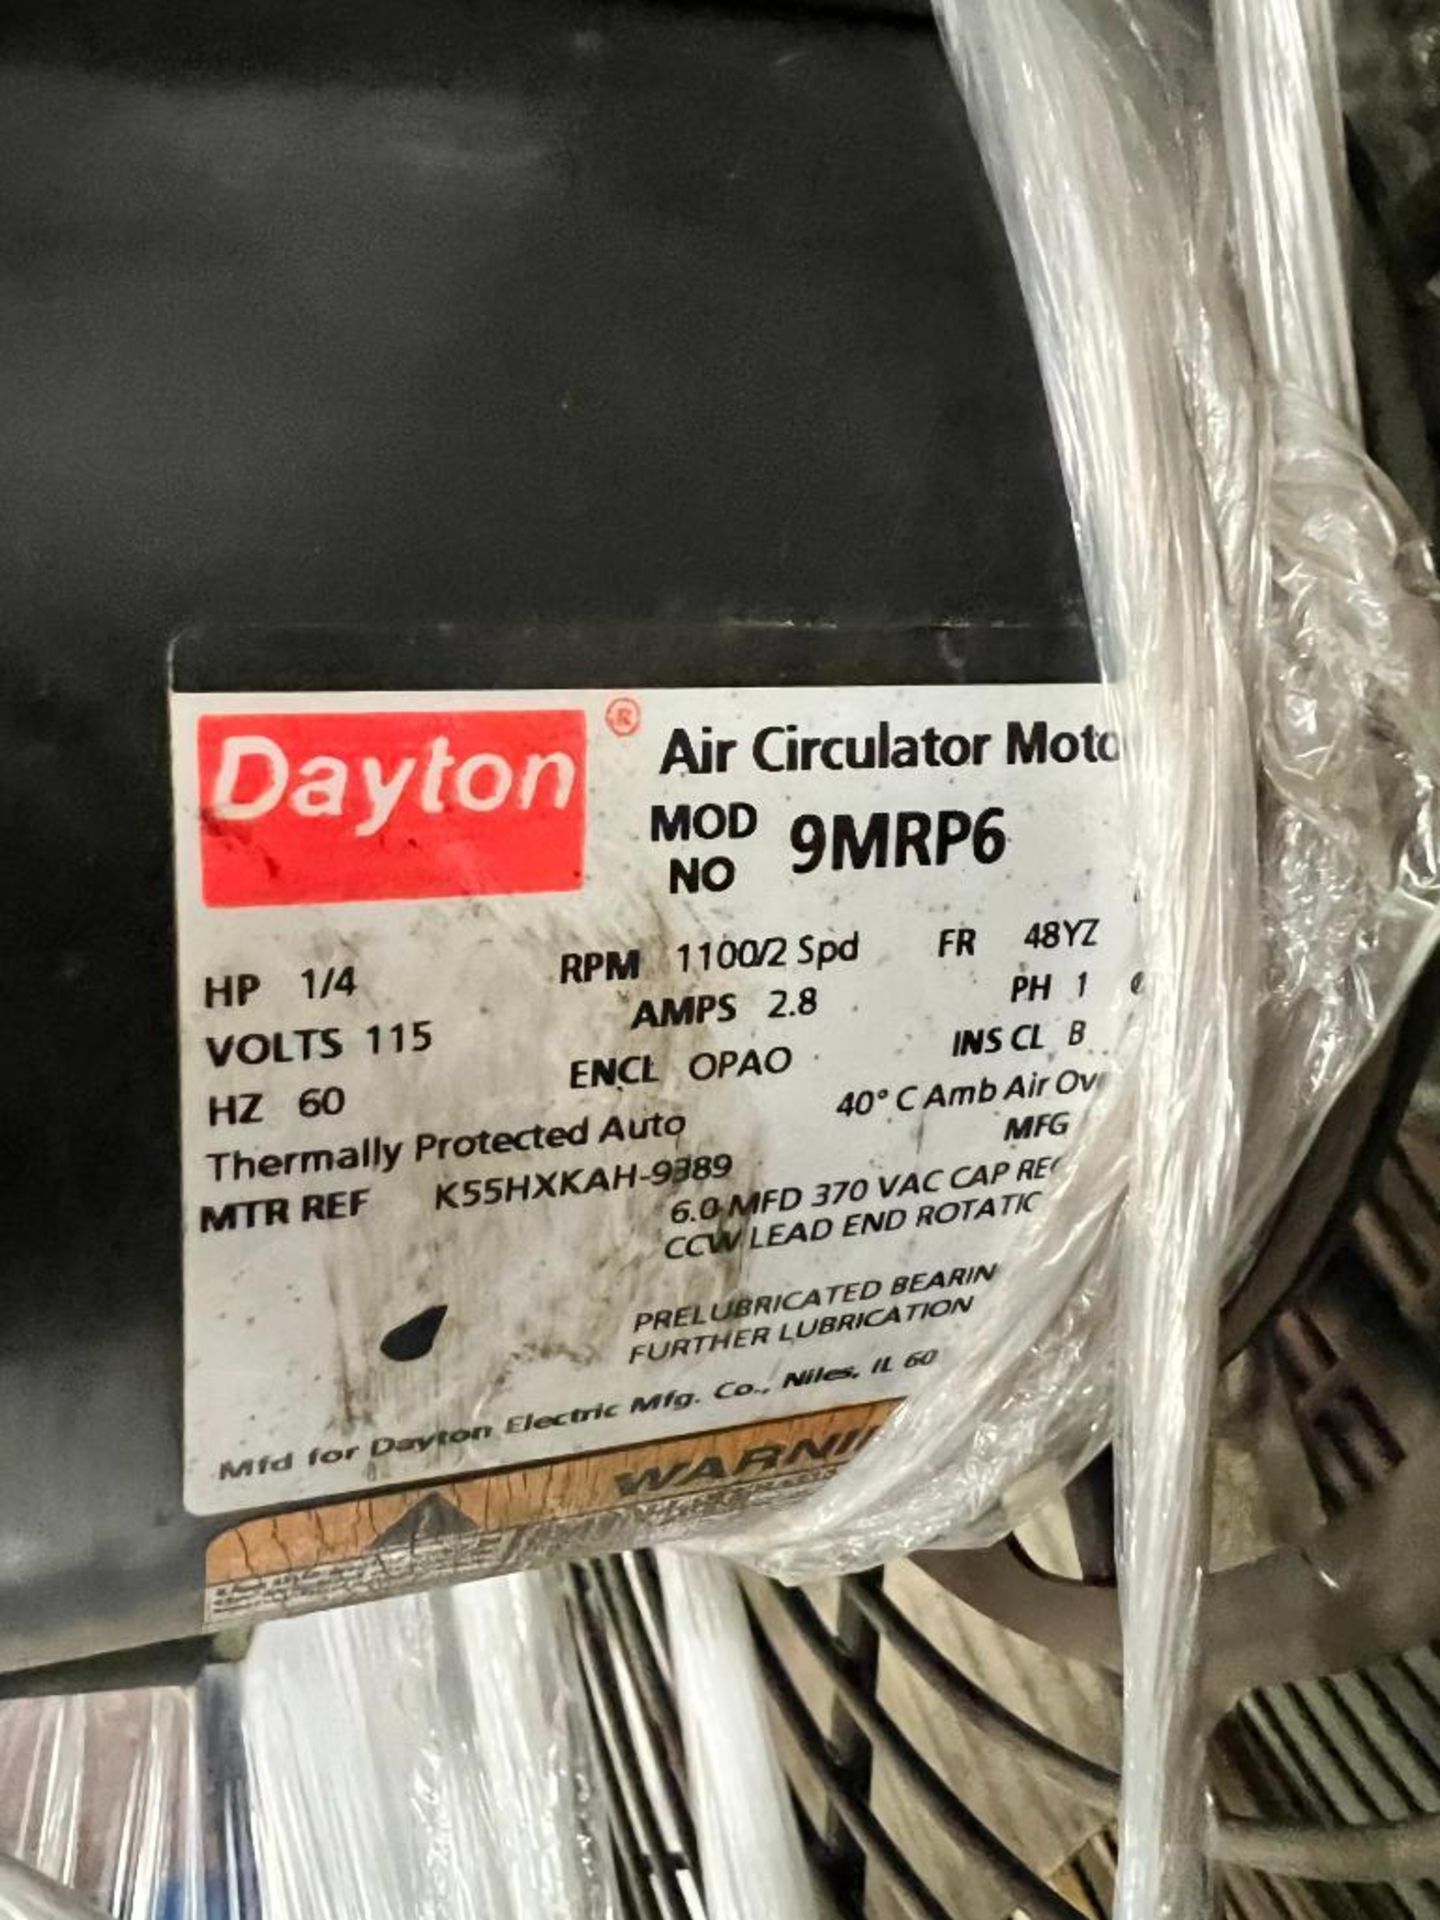 Dayton 24" Blade Mounting Fan - Image 2 of 2